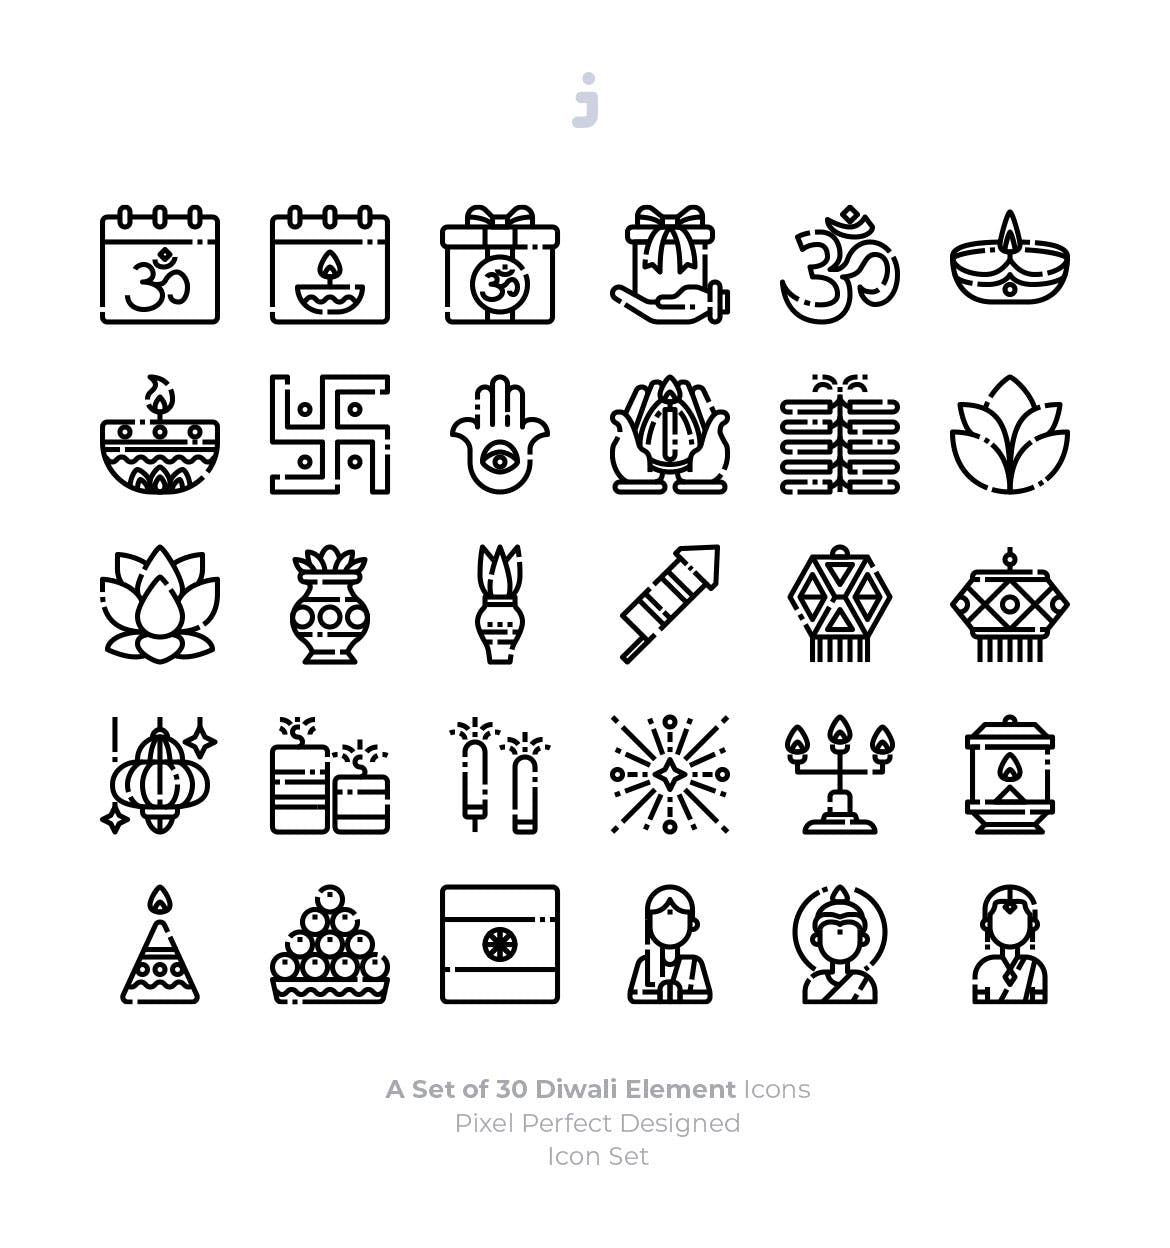  30个国外排灯节素材图标源文件下载30 Diwali Icons插图2